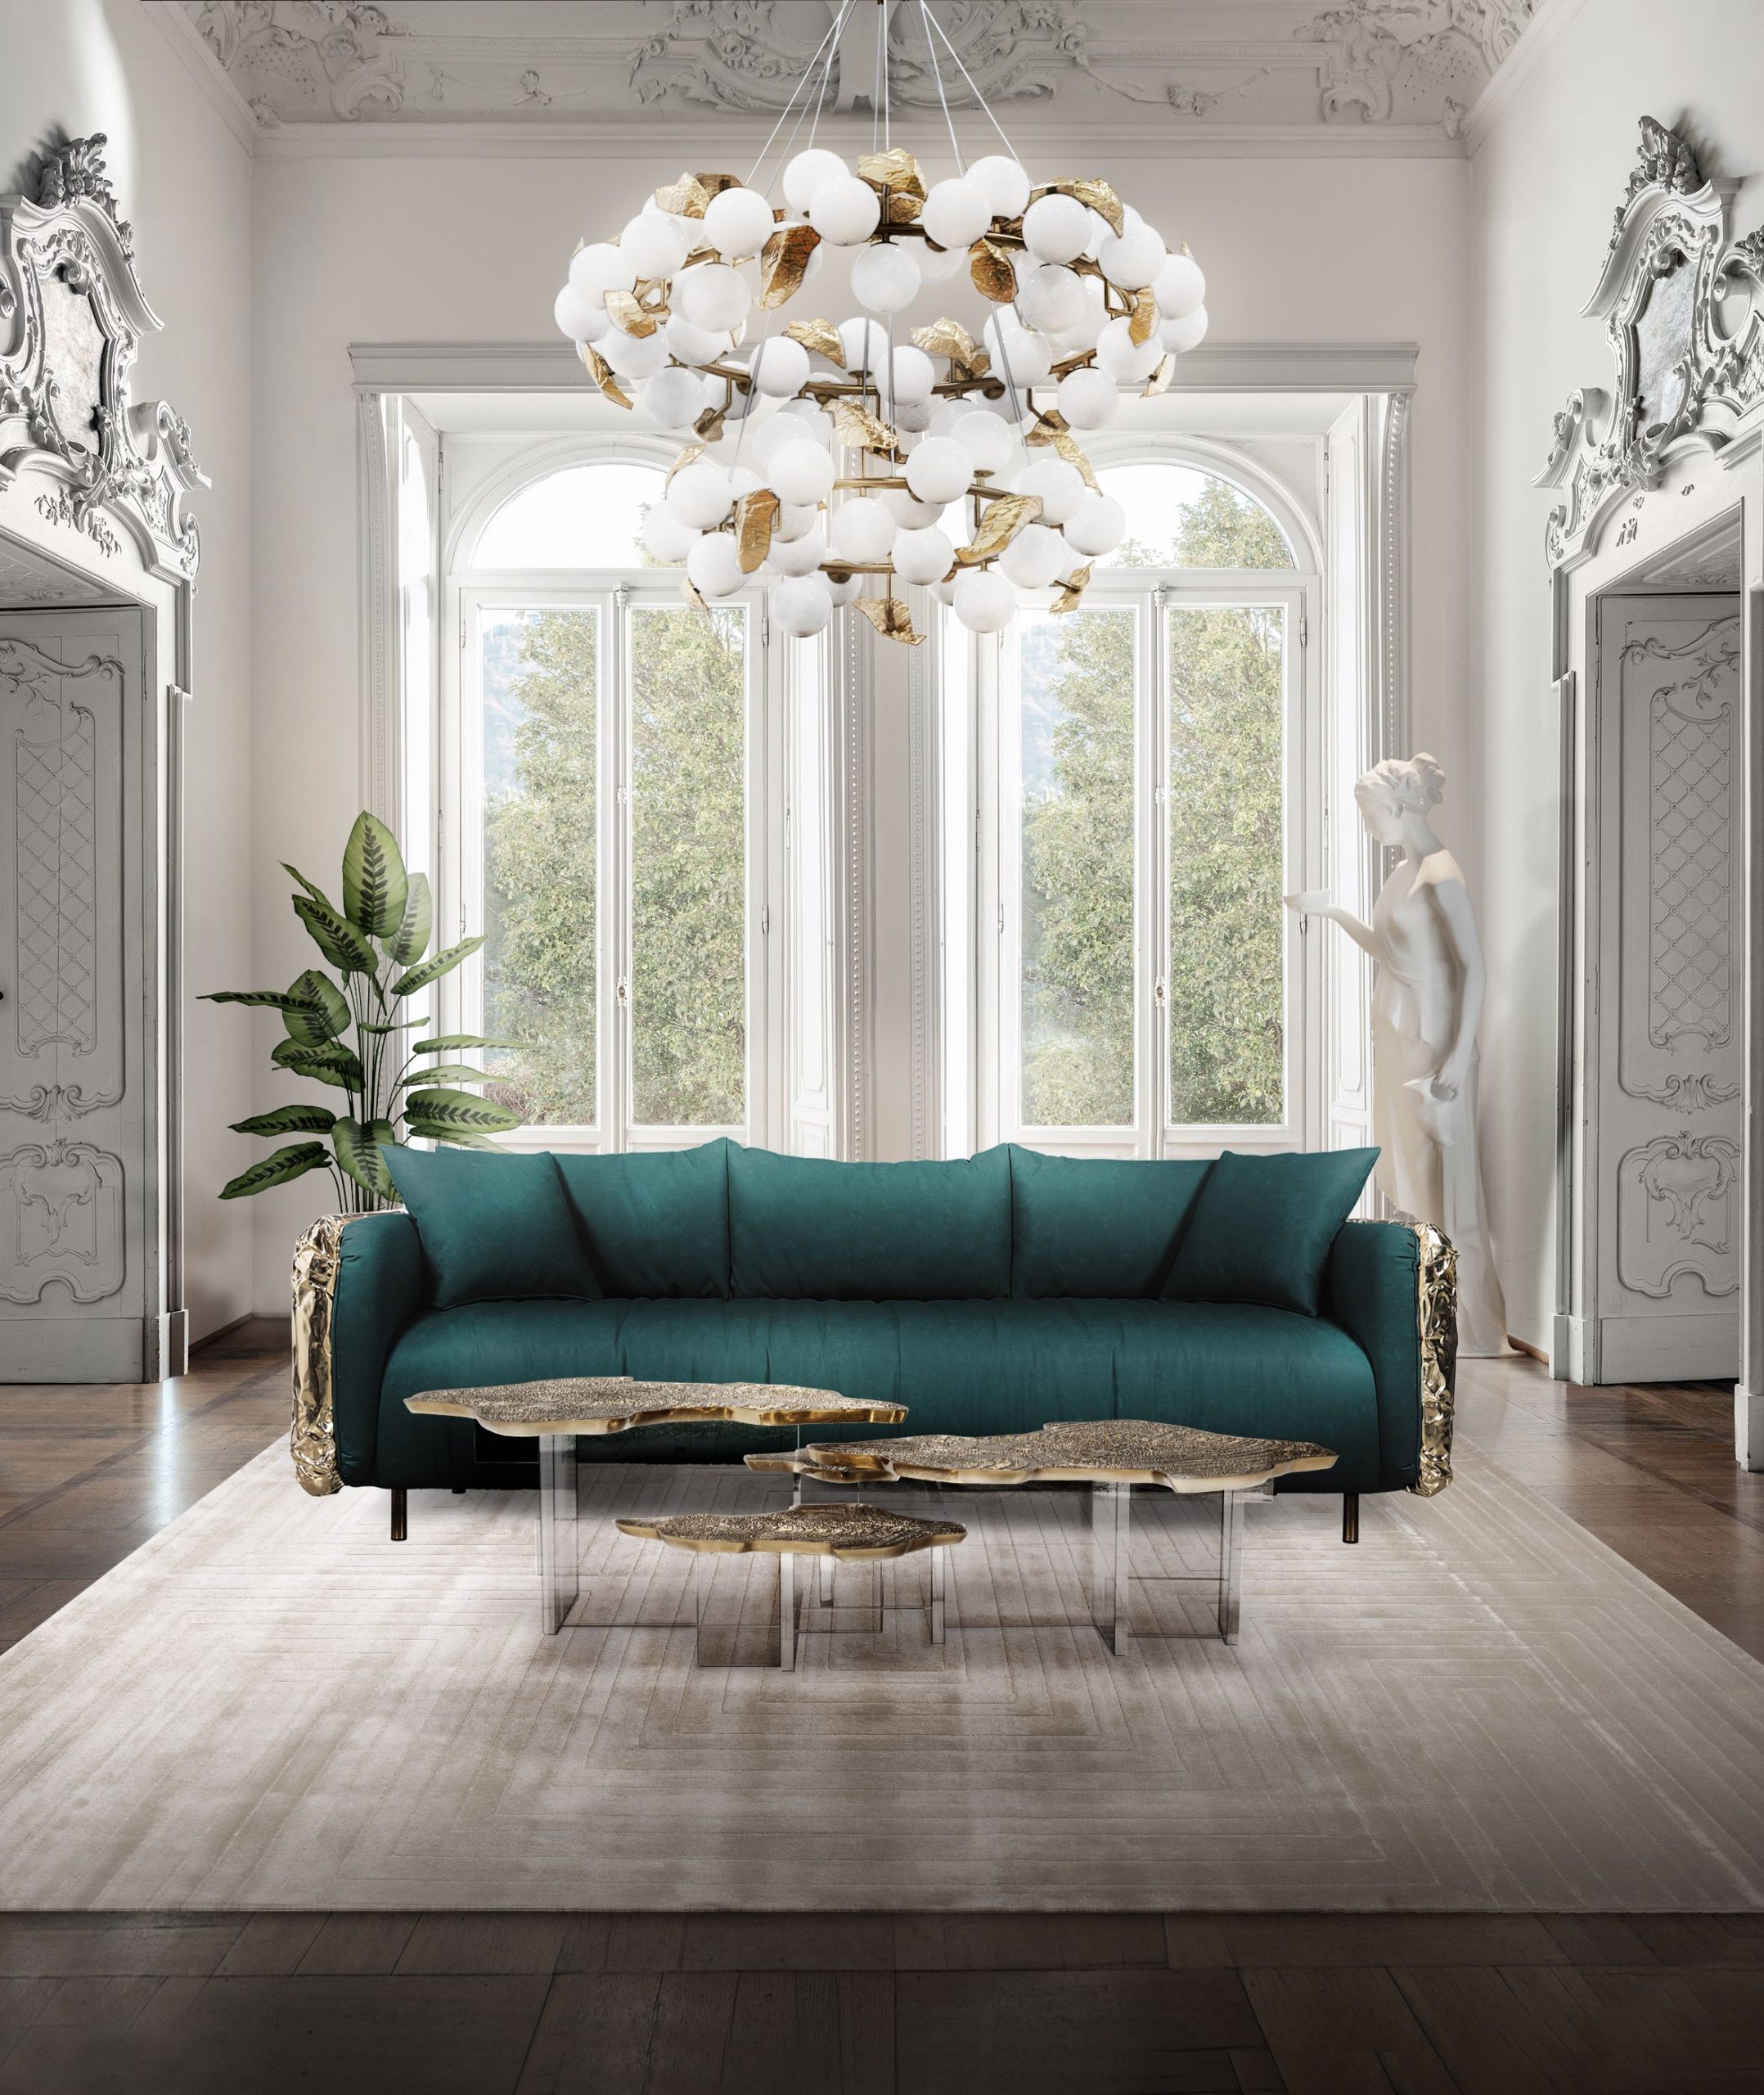 Living Room Carpet Ideas: The Inspiration You Deserve